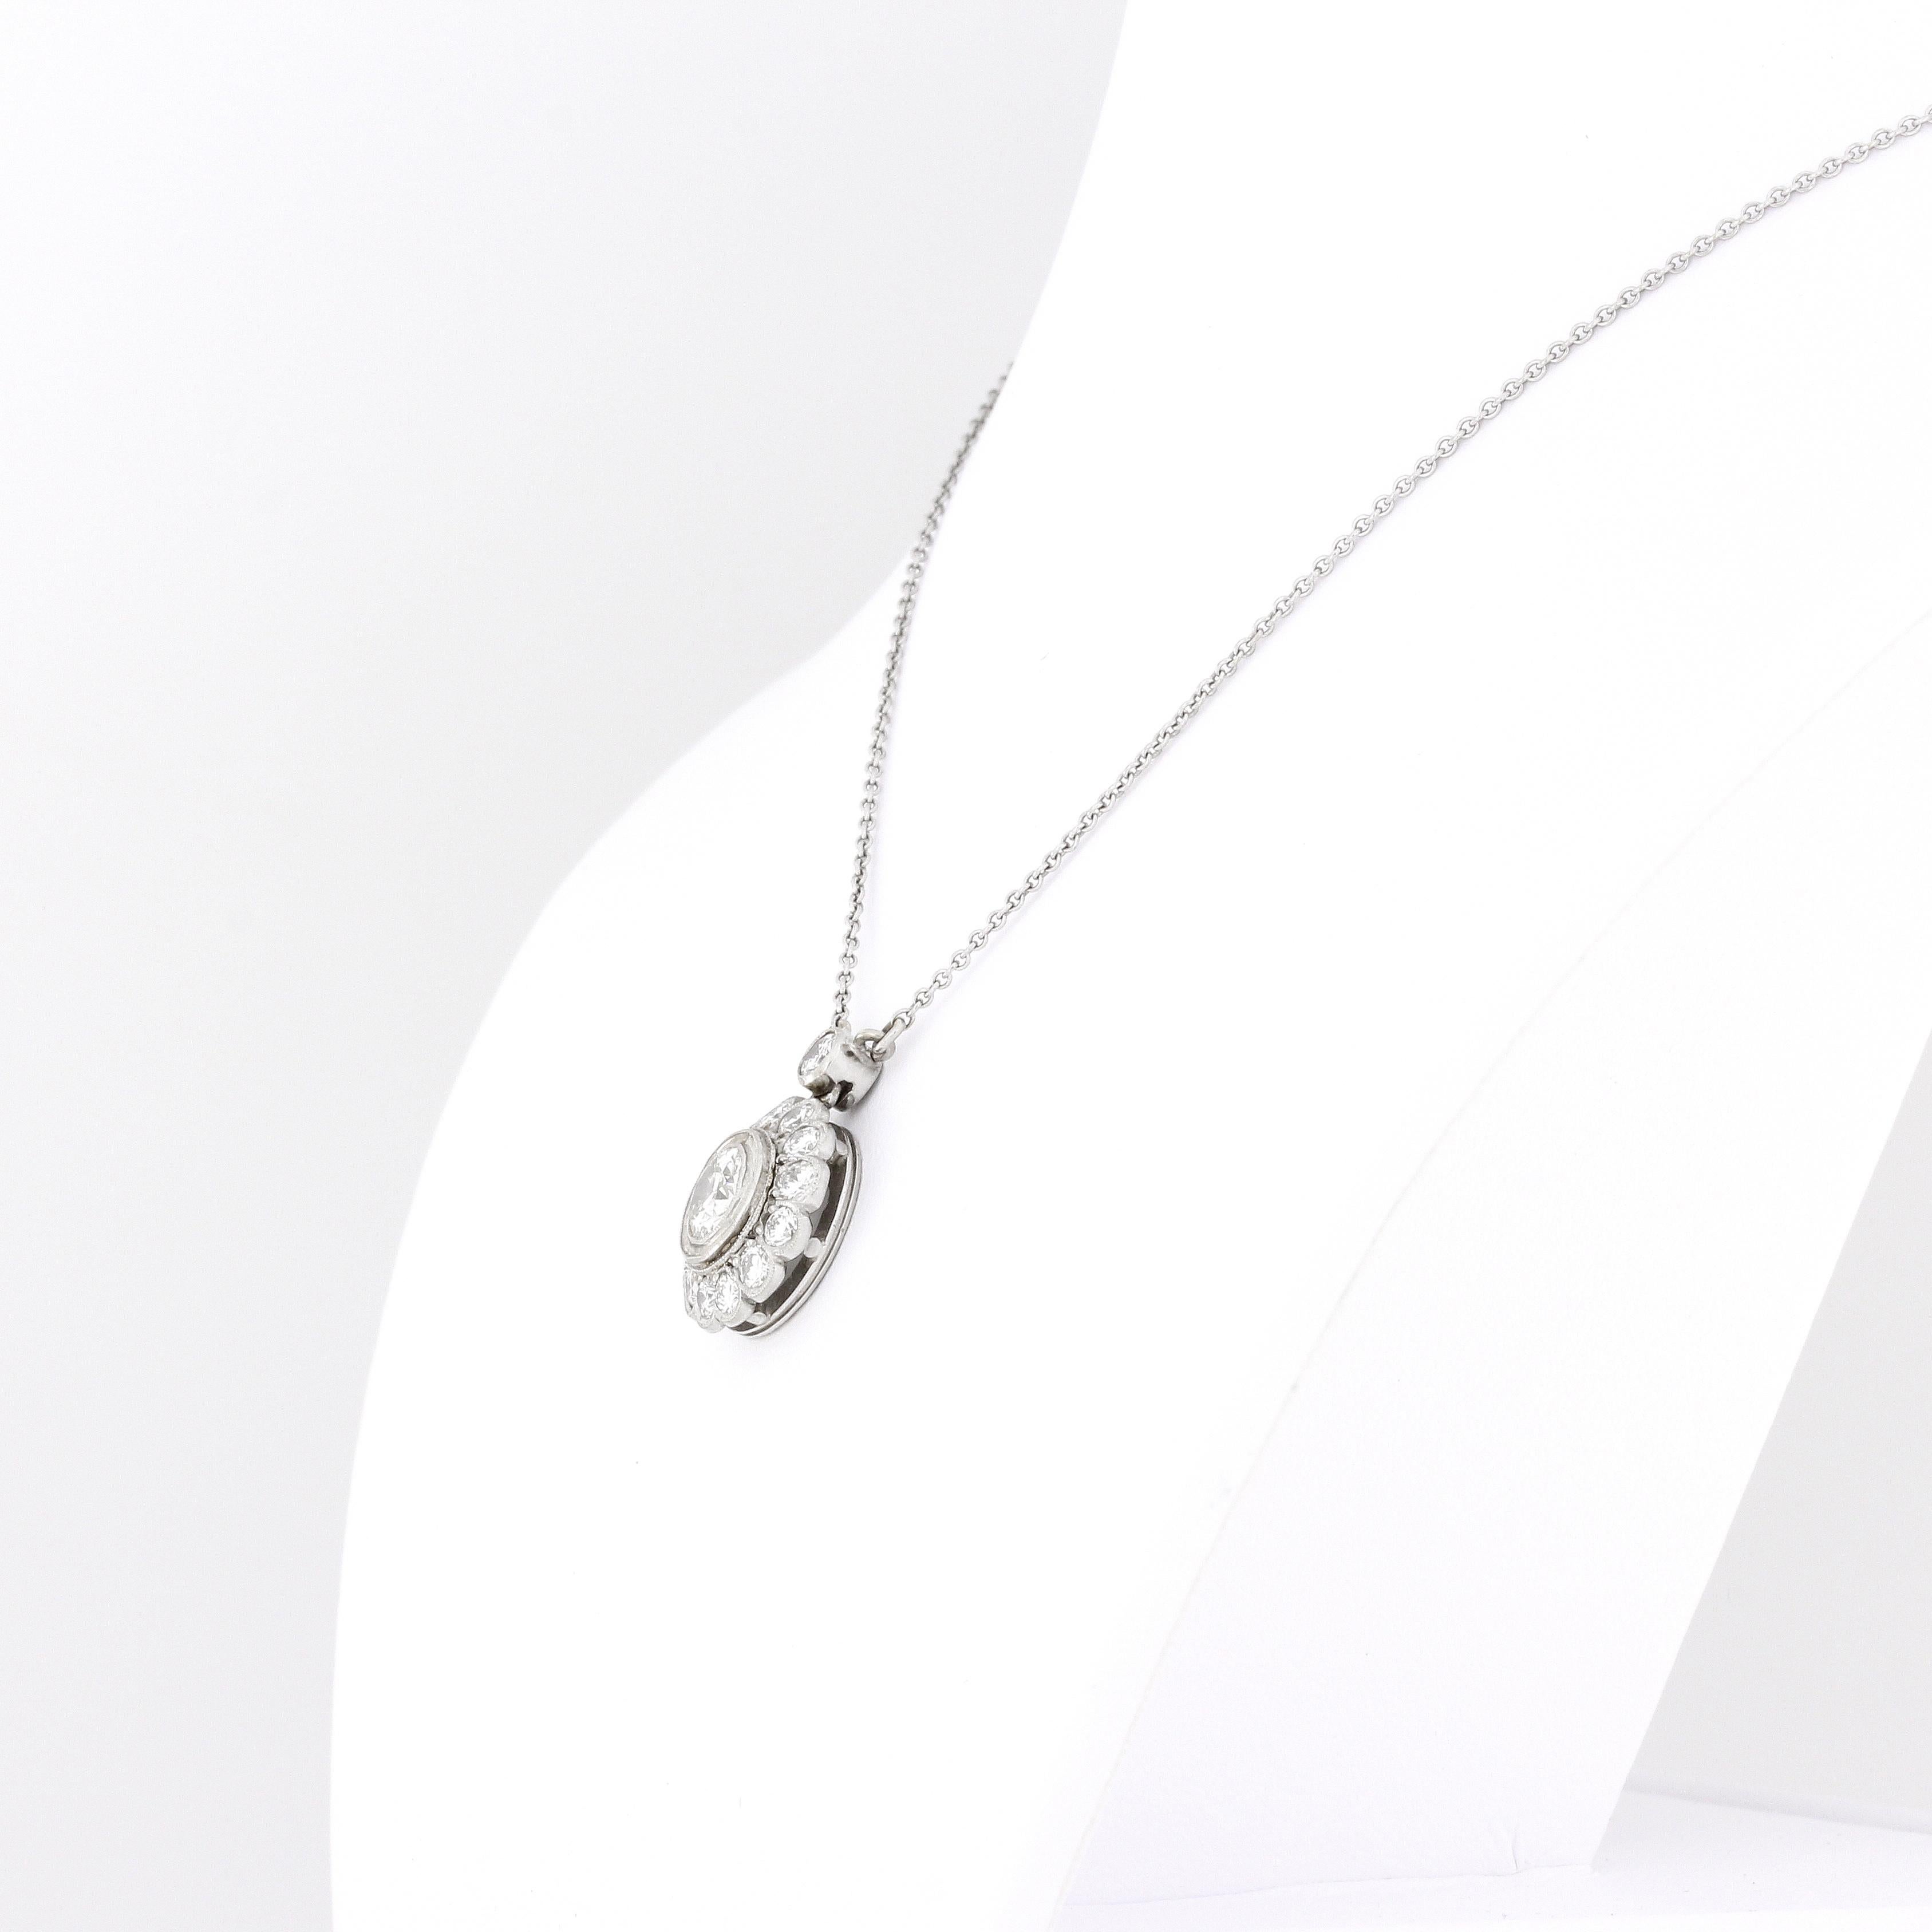 2.0 Carat Diamond Pendant Necklace 1